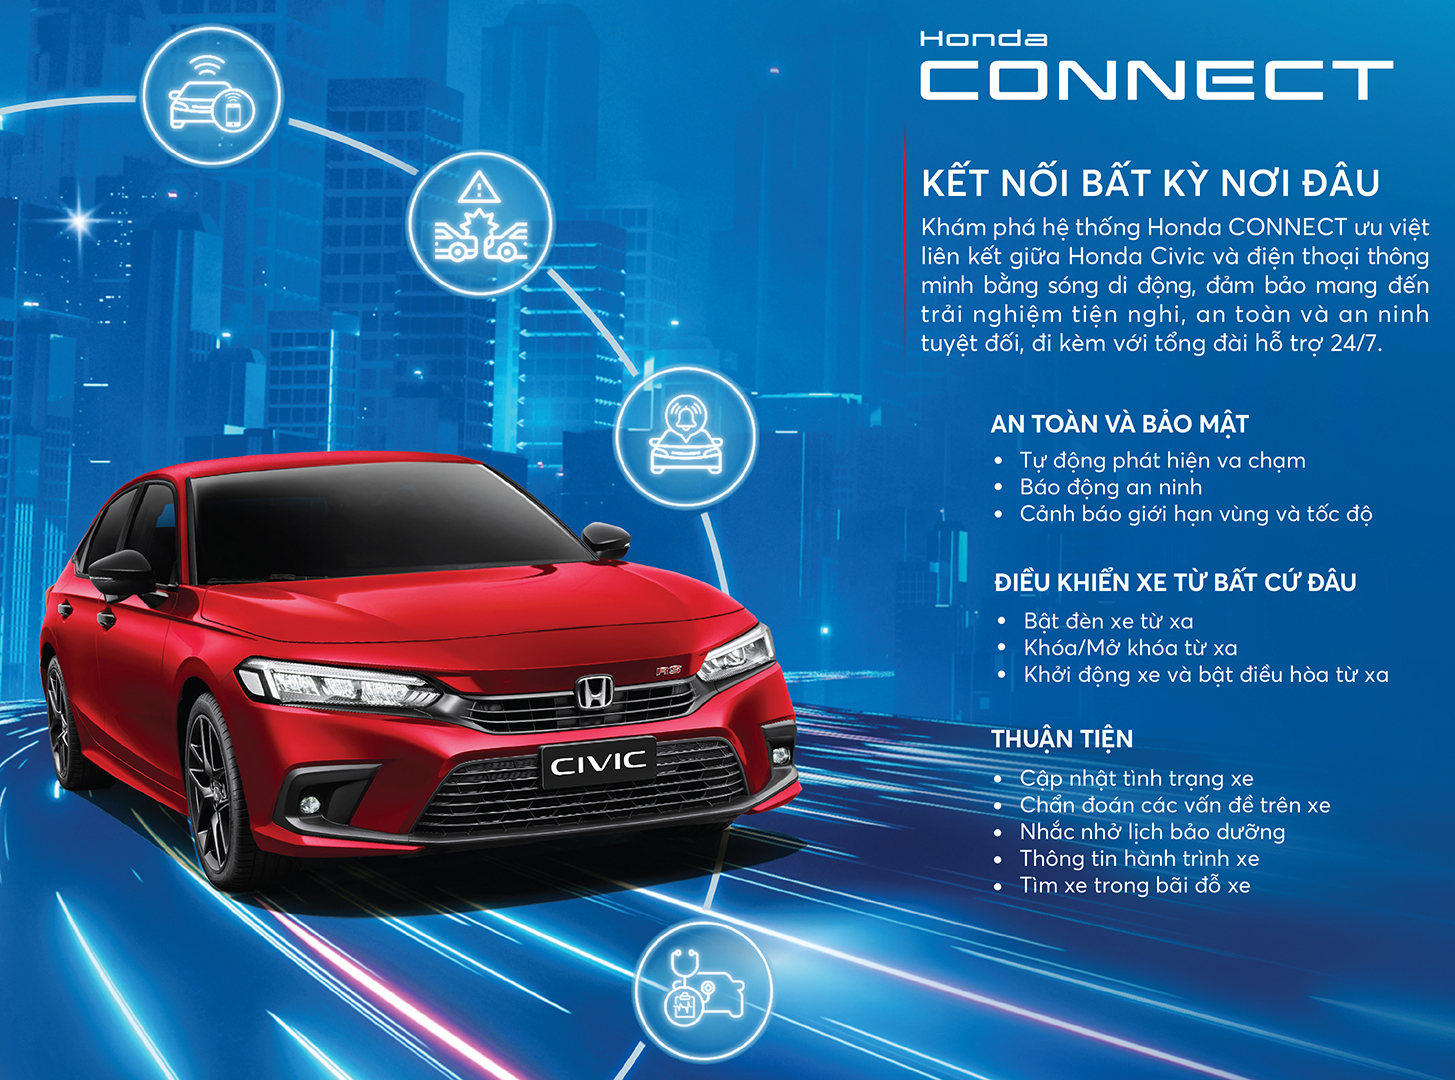 Mục sở thị  tính năng Honda Connect lần đầu xuất hiện tại Việt Nam trên chiếc Honda CIVIC